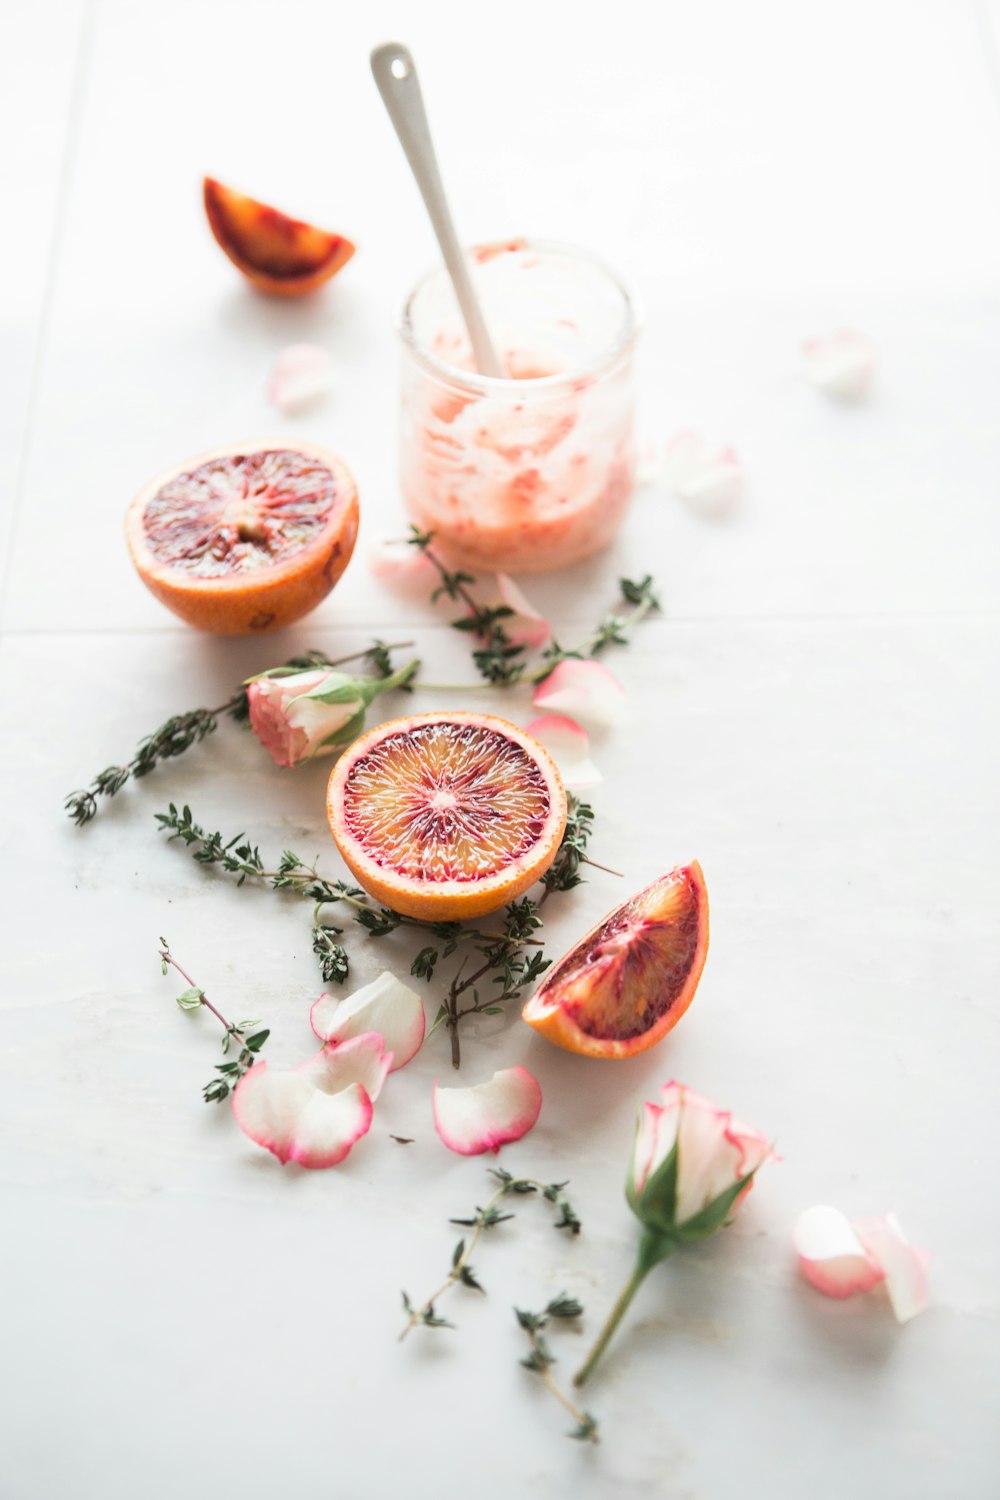 Frutas de naranja sanguina en rodajas con flores de pétalos blancos y rosados al lado